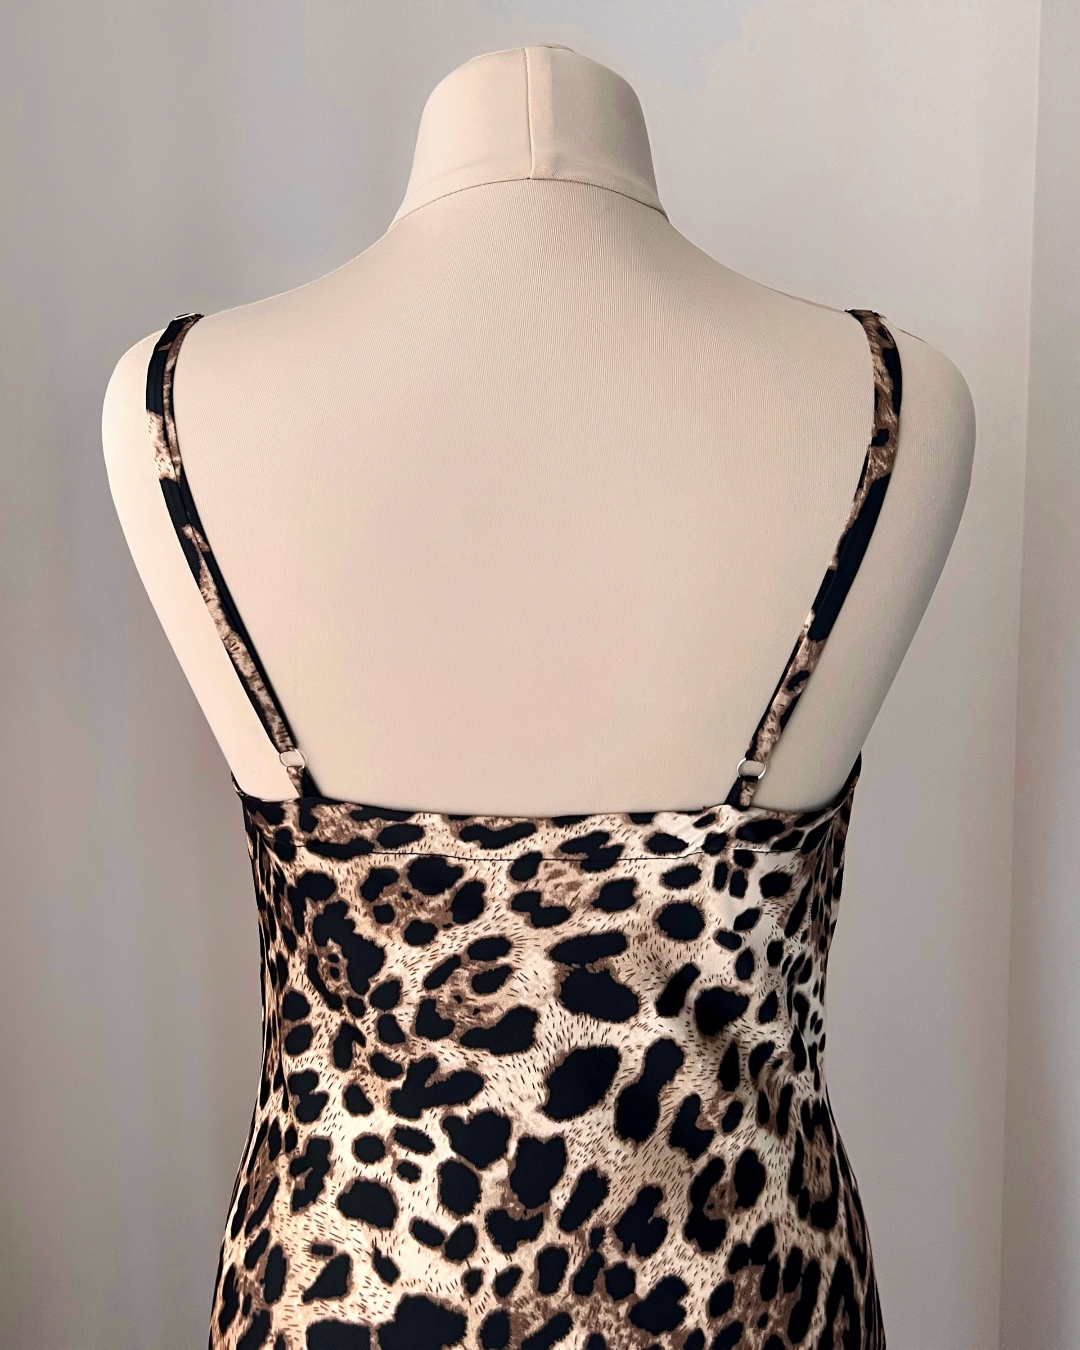 a mannequin wearing a leopard print dress